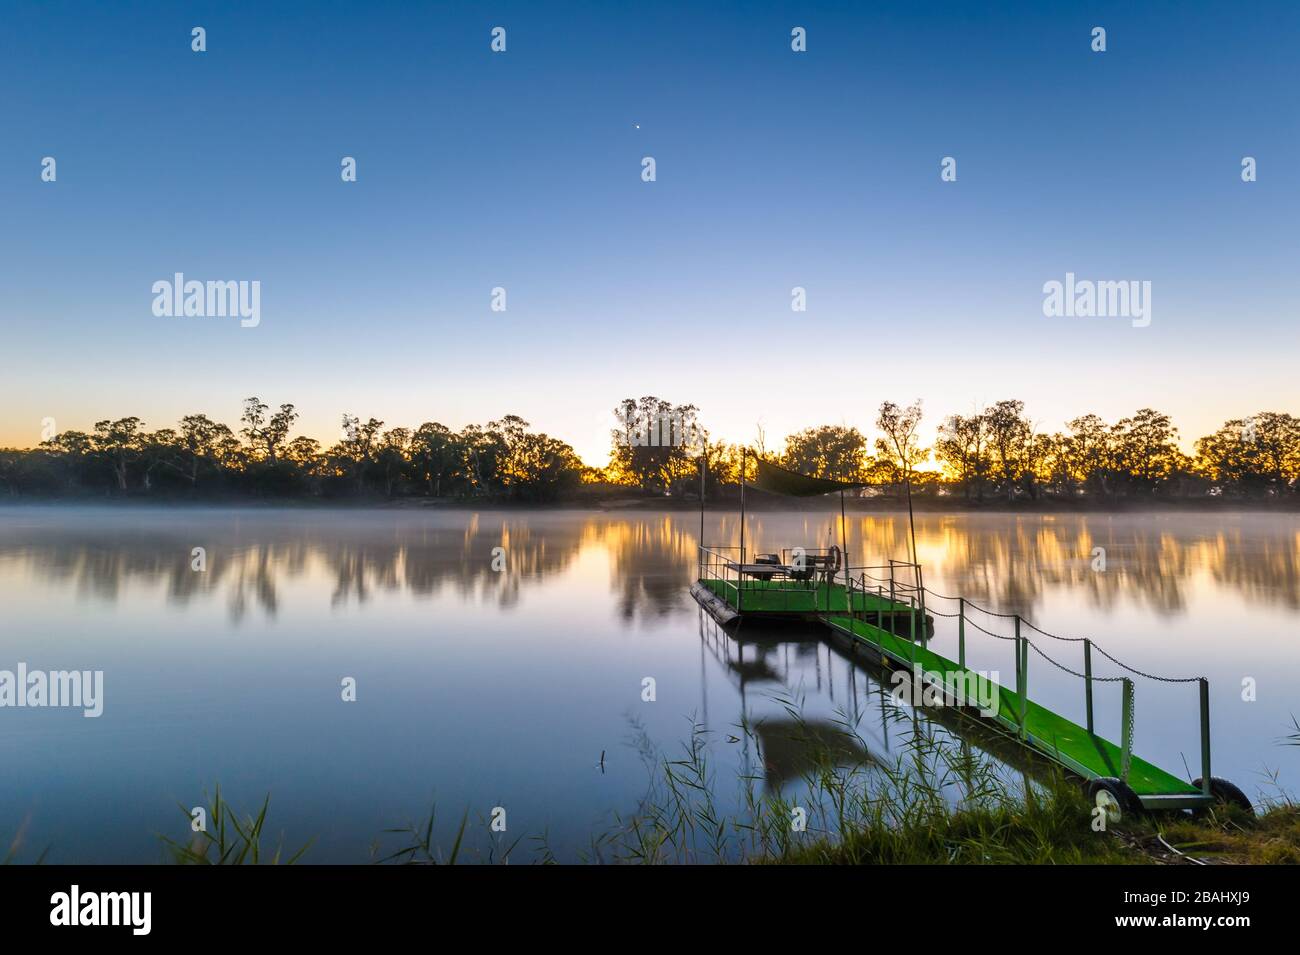 Tapis synthétique sur ponton sur la Murray River au coucher du soleil à Blanchetown, en Australie méridionale. Banque D'Images